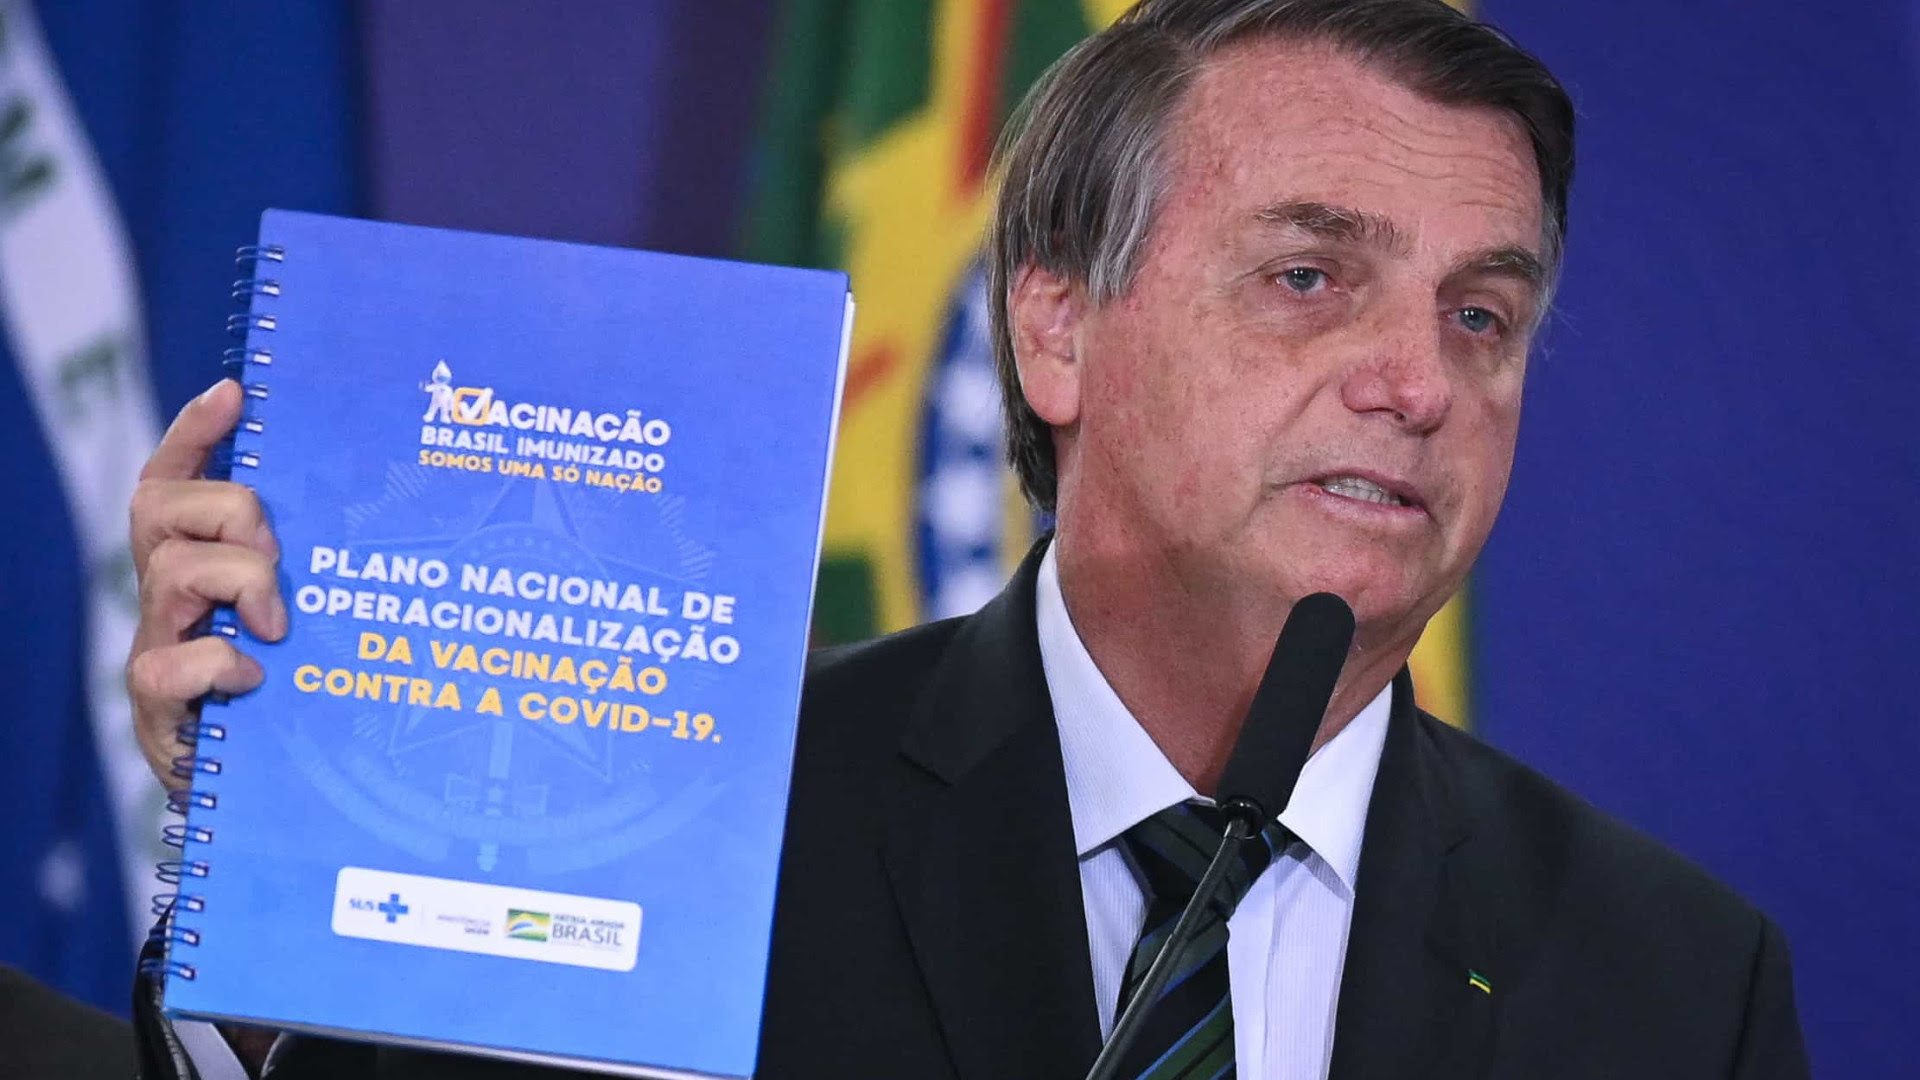 Se algum de nós exagerou, foi no afã de buscar solução, diz Bolsonaro sobre vacina